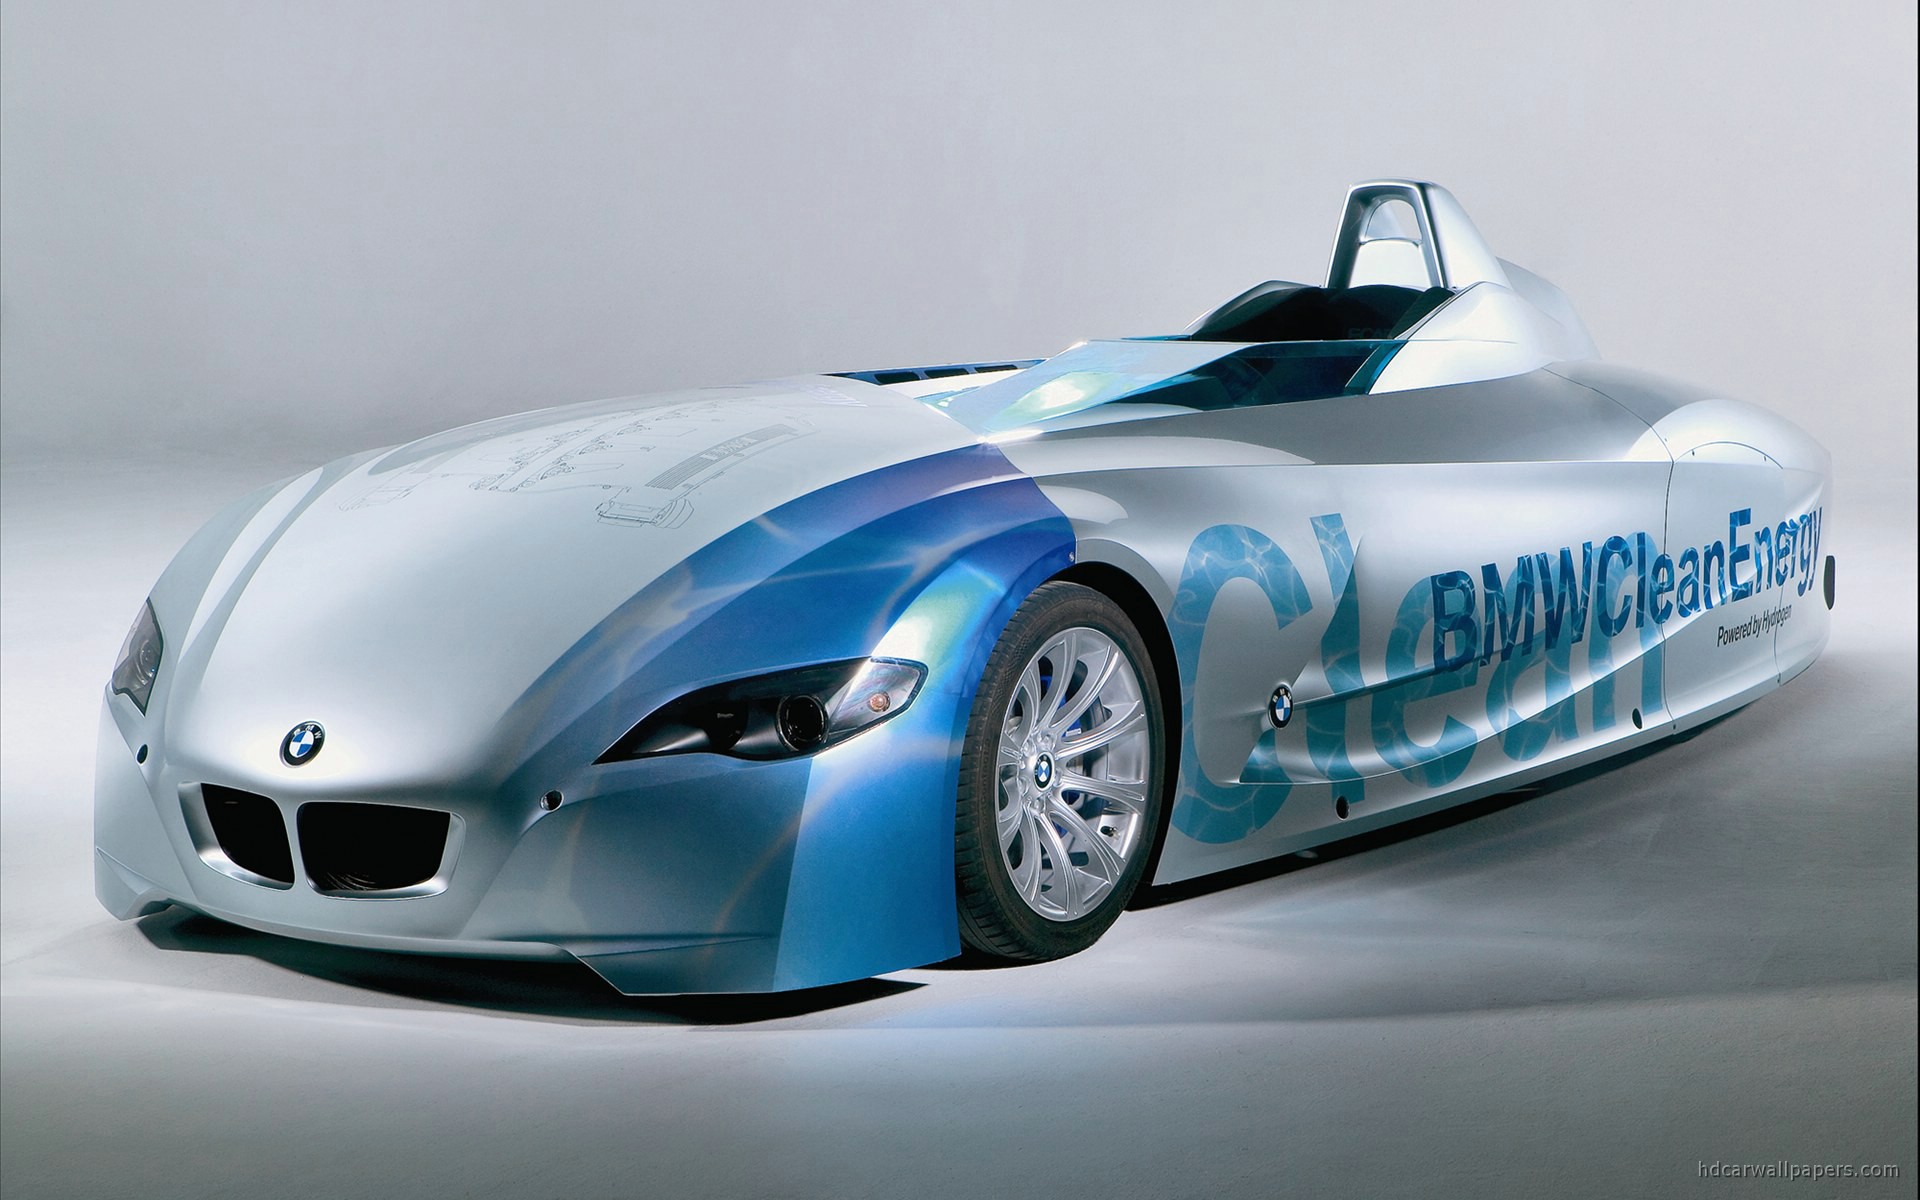 Bmw concept hydrogen car #1